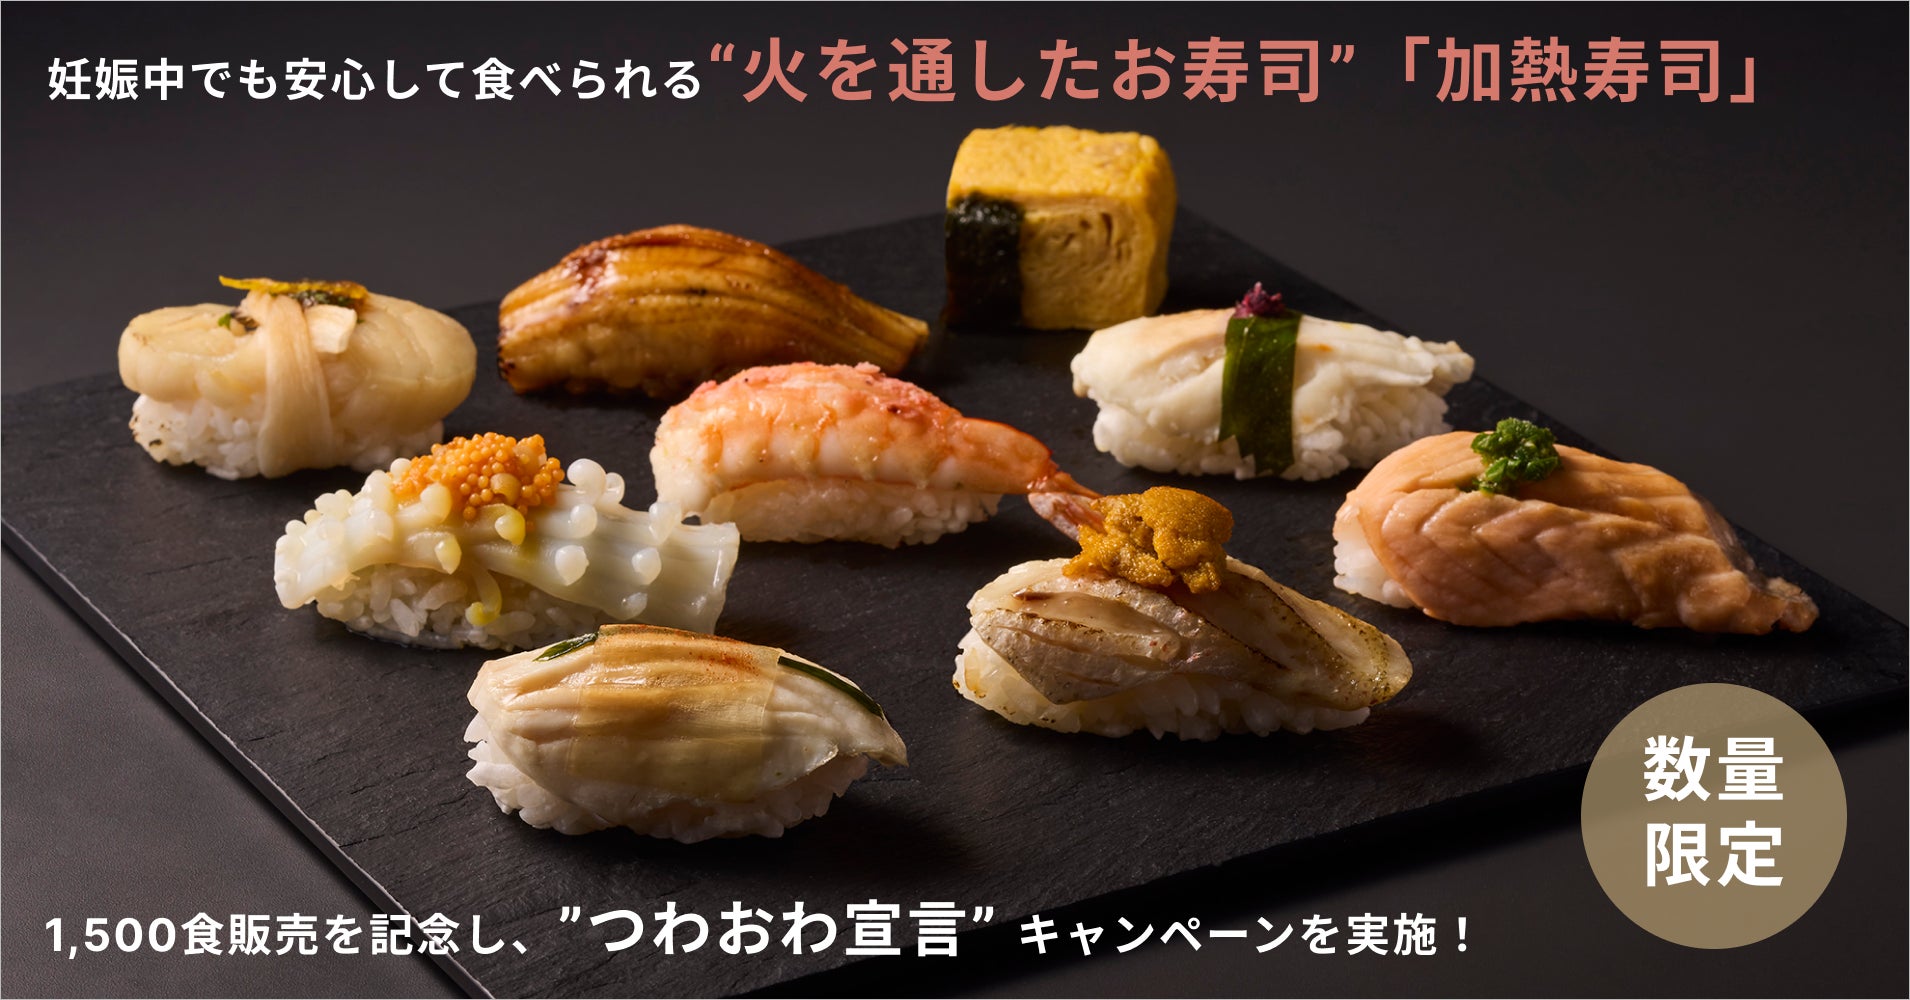 妊娠中でも安心して食べられる”火を通したお寿司”「加熱寿司」発売開始から半年で1,500食販売を記念して、“つわおわ宣言”キャンペーンを実施。